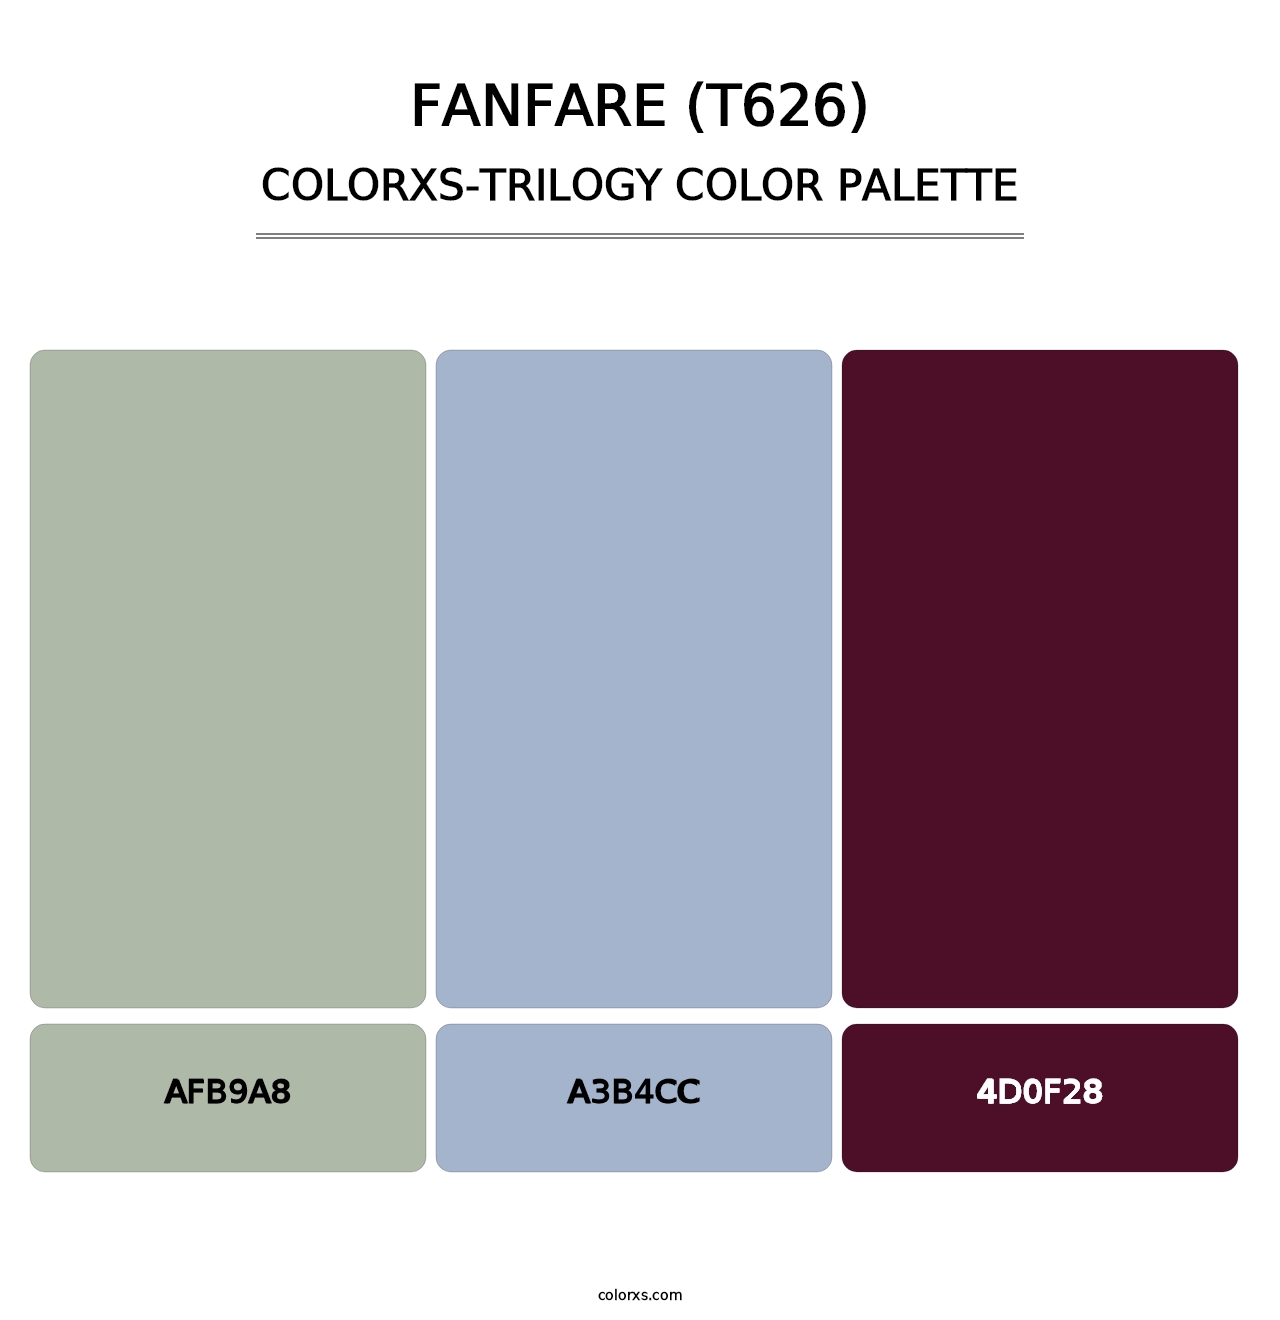 Fanfare (T626) - Colorxs Trilogy Palette